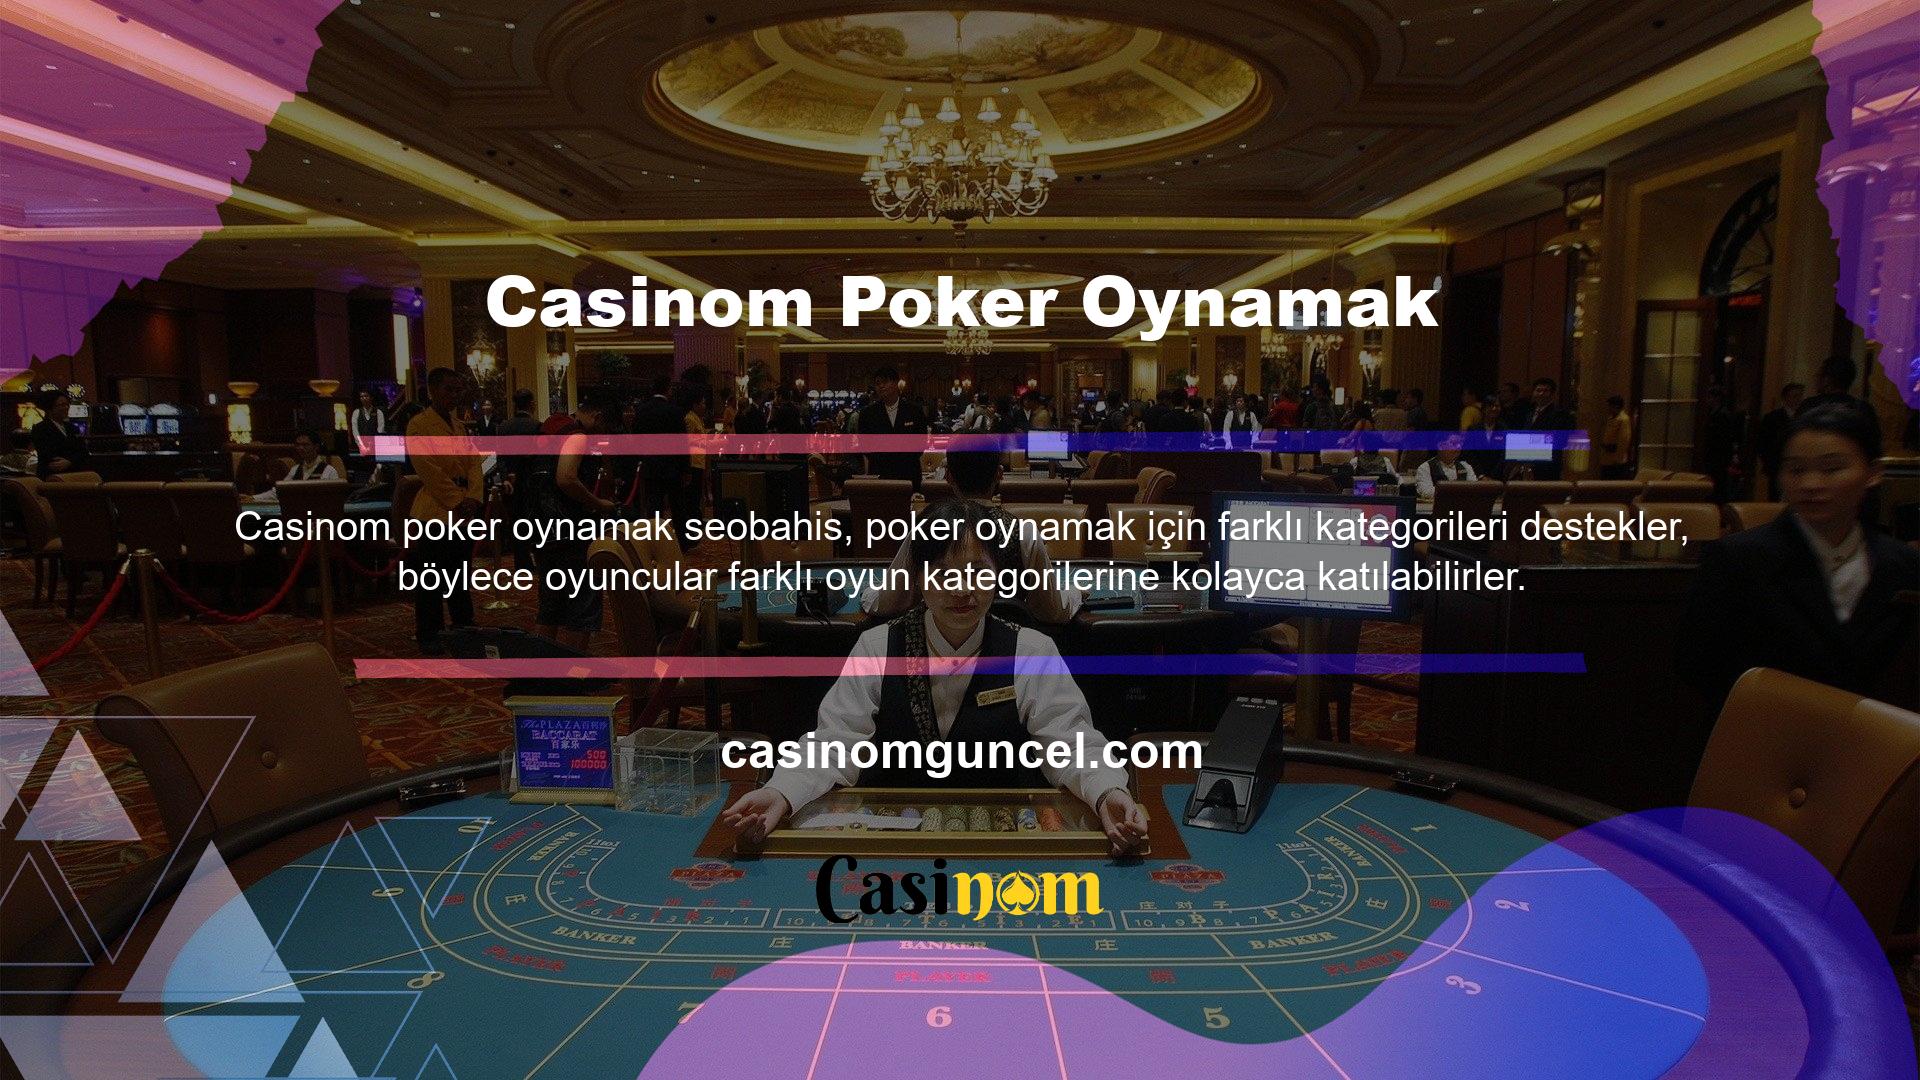 Oyuncular özellikle Casinom poker oynamak için tasarlanmış etkinlikleri sever